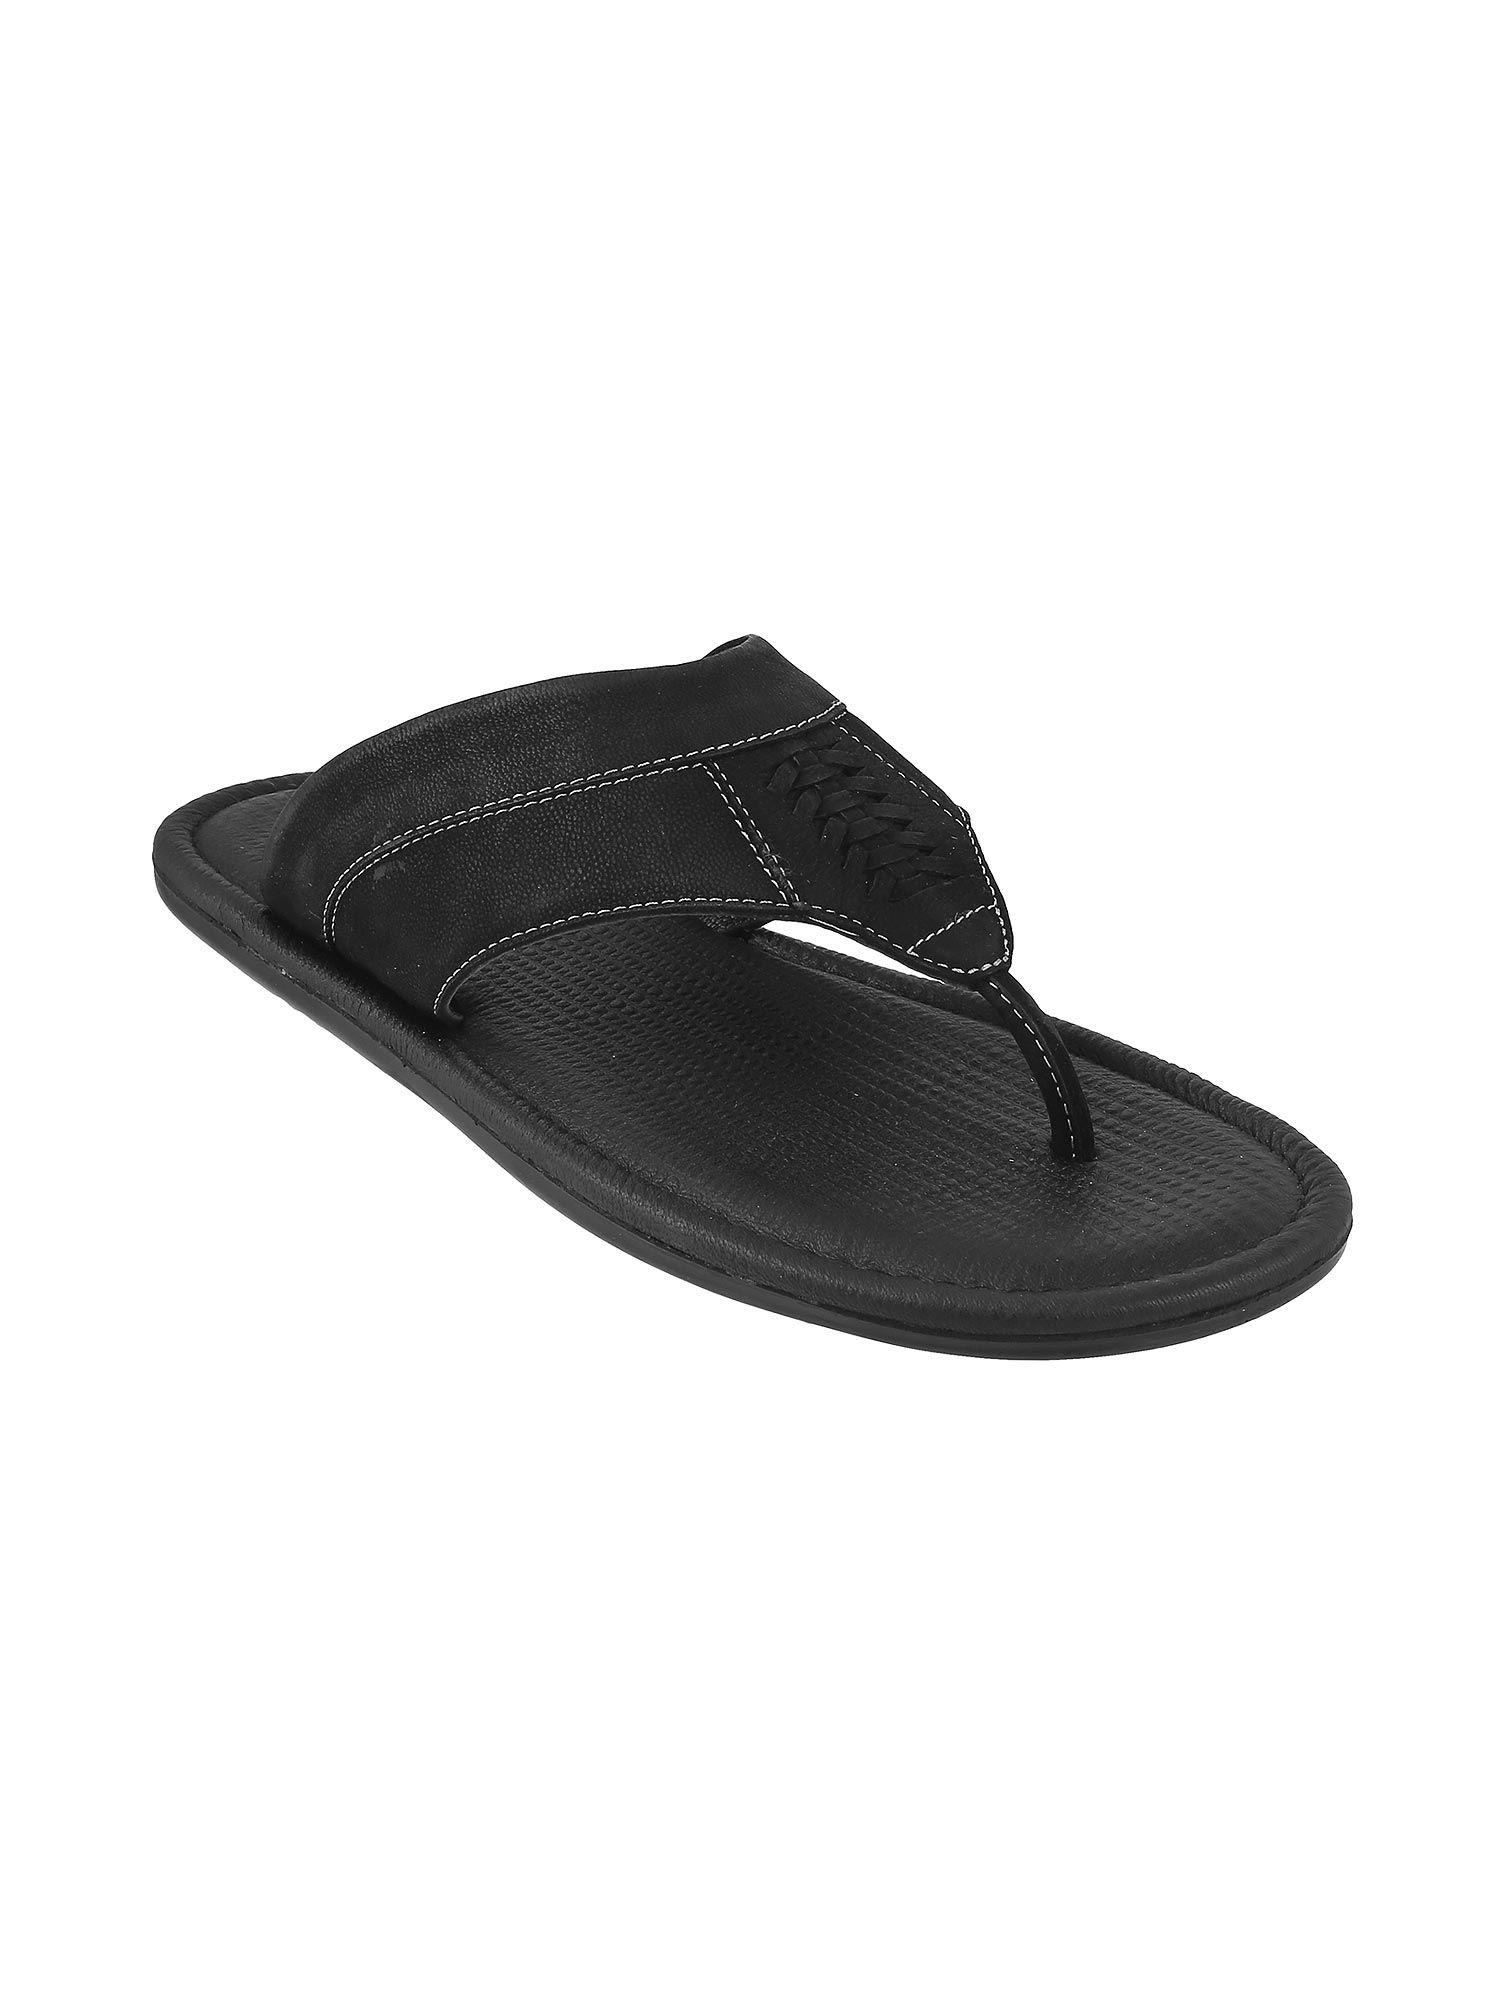 mens-black-sandals